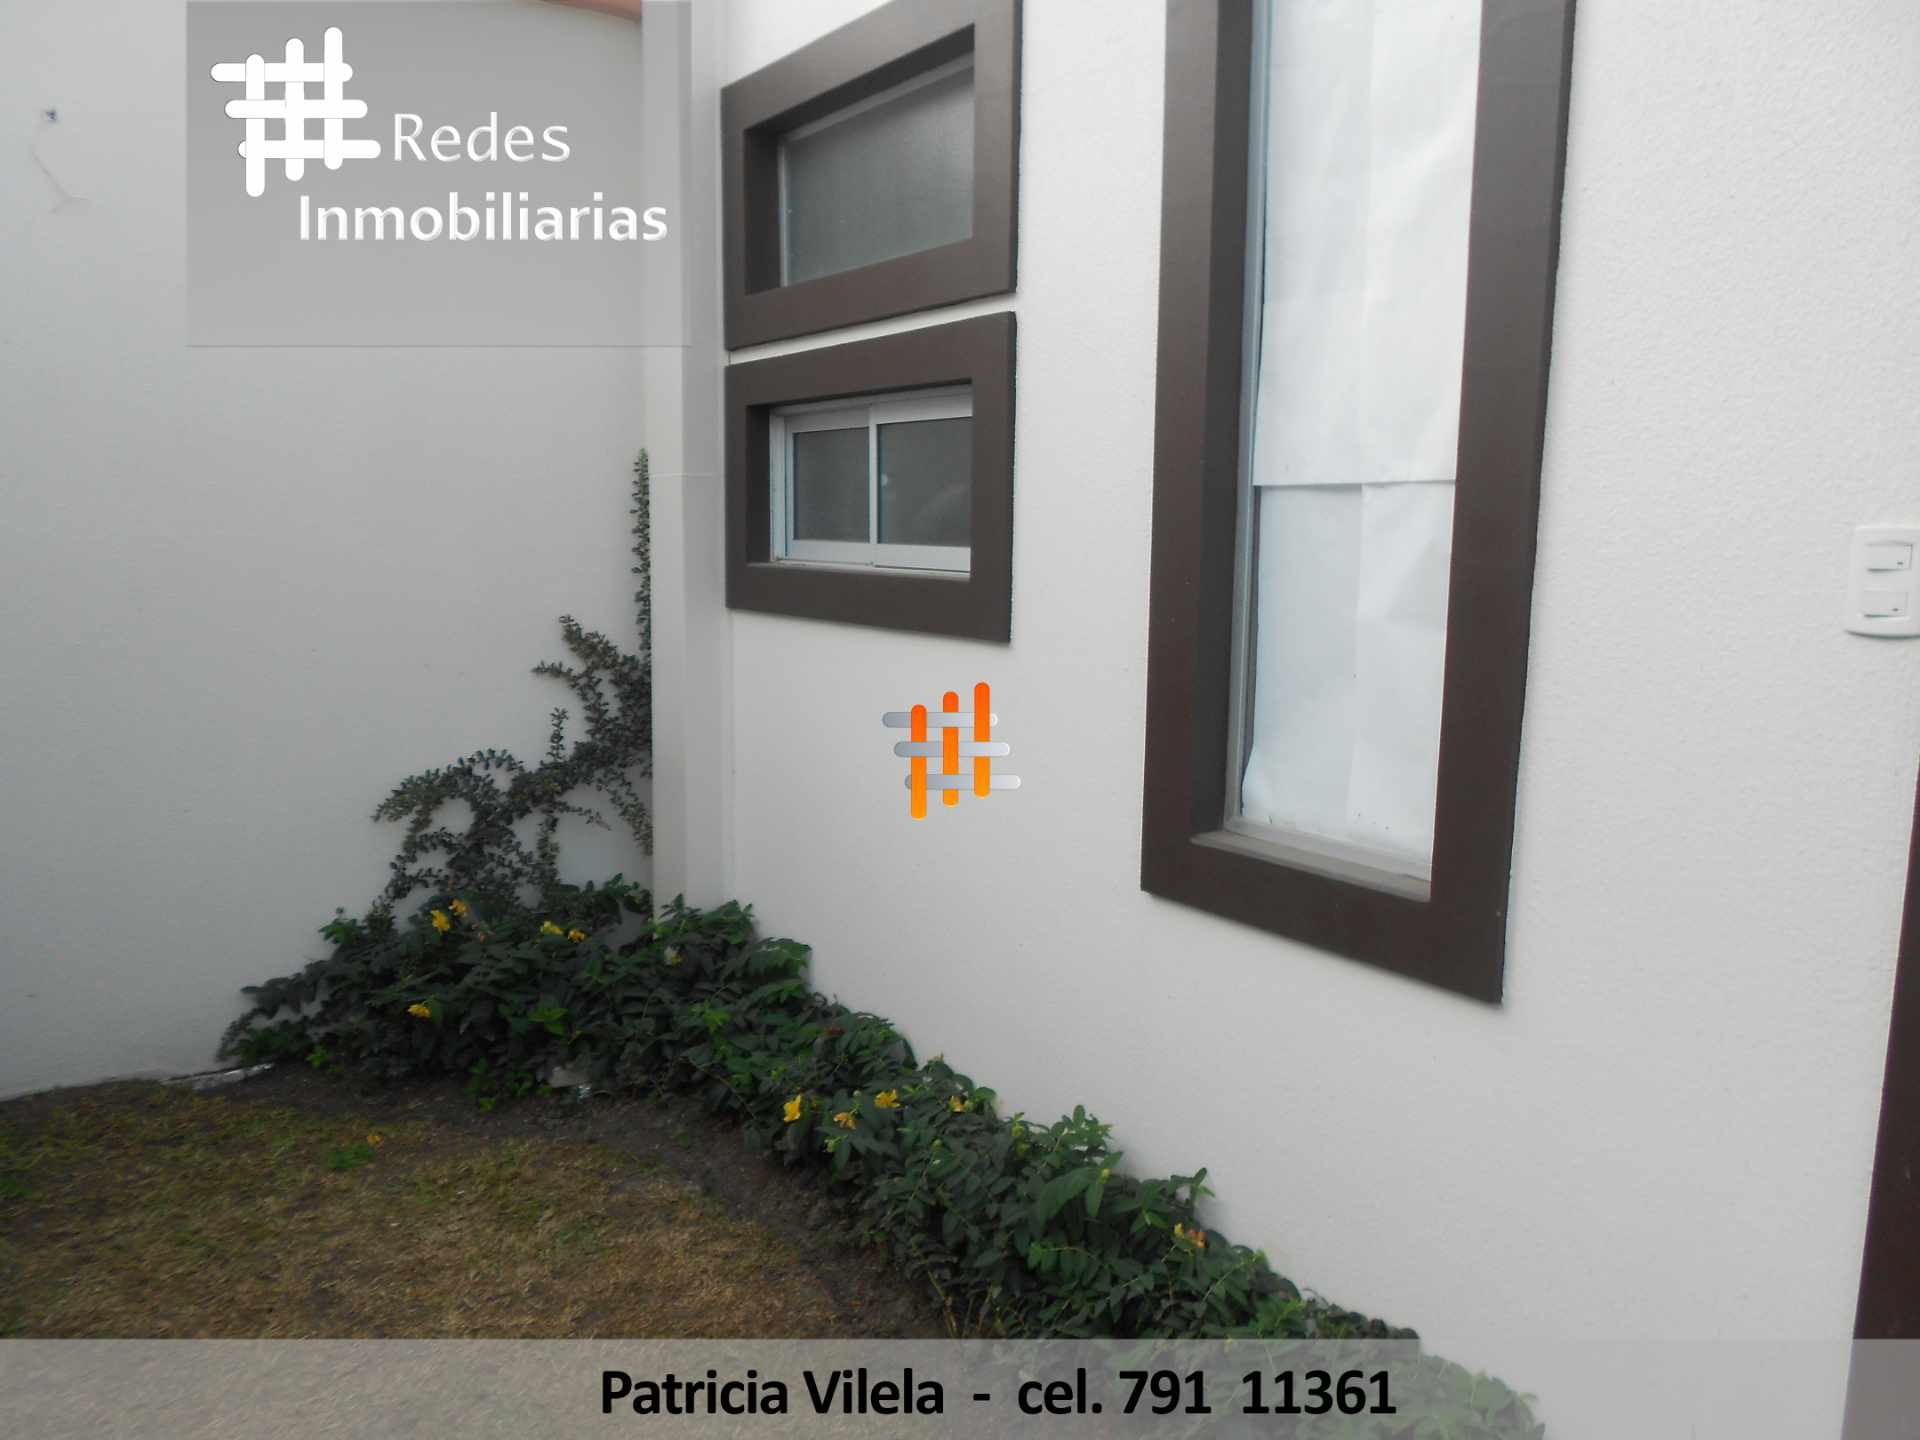 Casa Redes Inmobiliarias
Publicado por Patricia Vilela Hinojosa · 13 de junio a las 19:54 · 
EN VENTA CASA SERRANIAS DEL GOLF DE CUATRO DORMITORIOS CON BASEMENT EXCELENTE PRECIO Foto 1